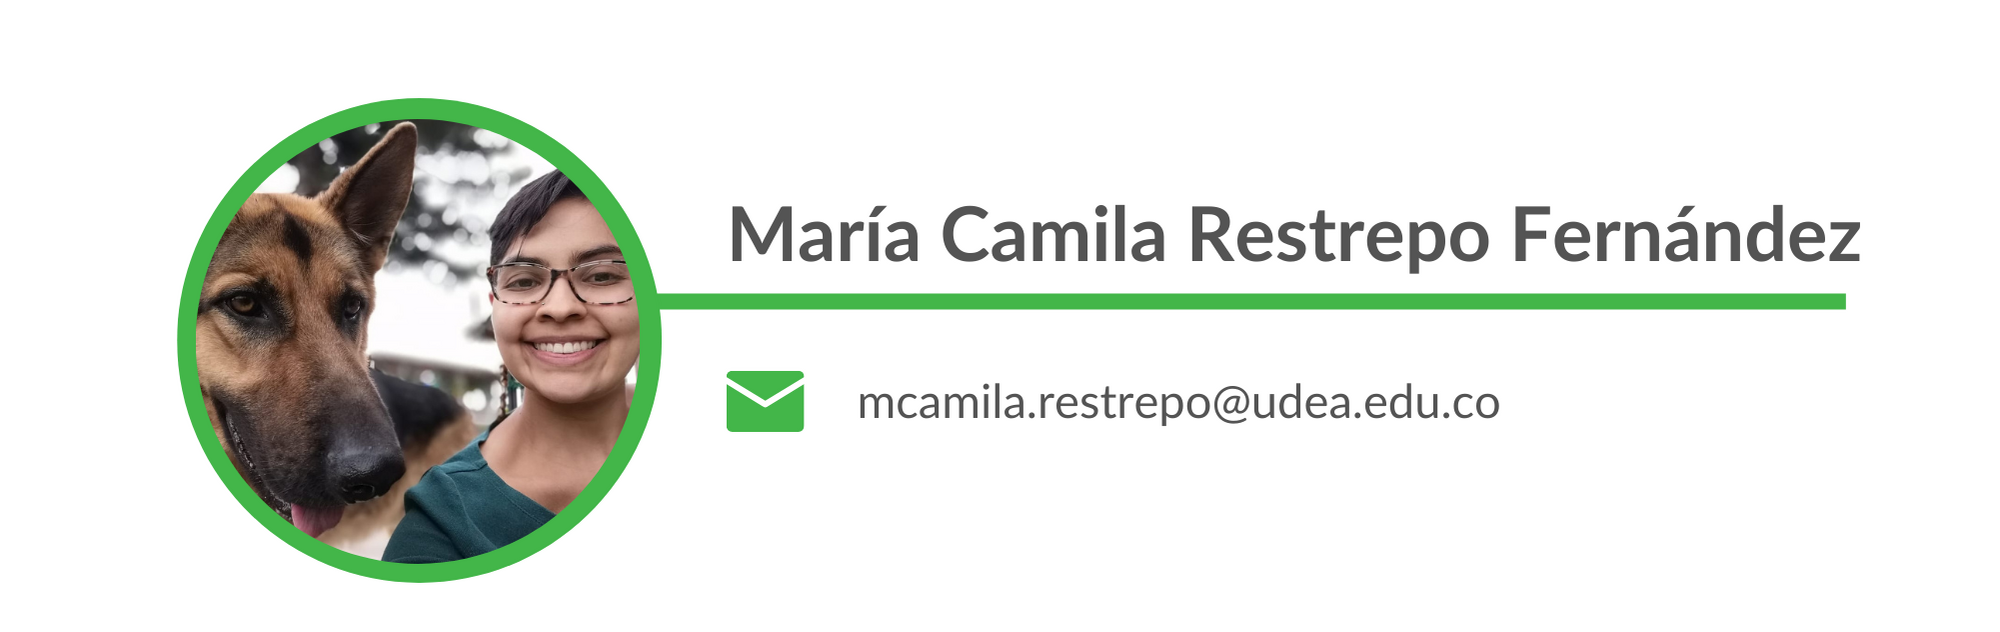 María Camila Restrepo Fernández. Email: mcamila.restrepo@udea.edu.co